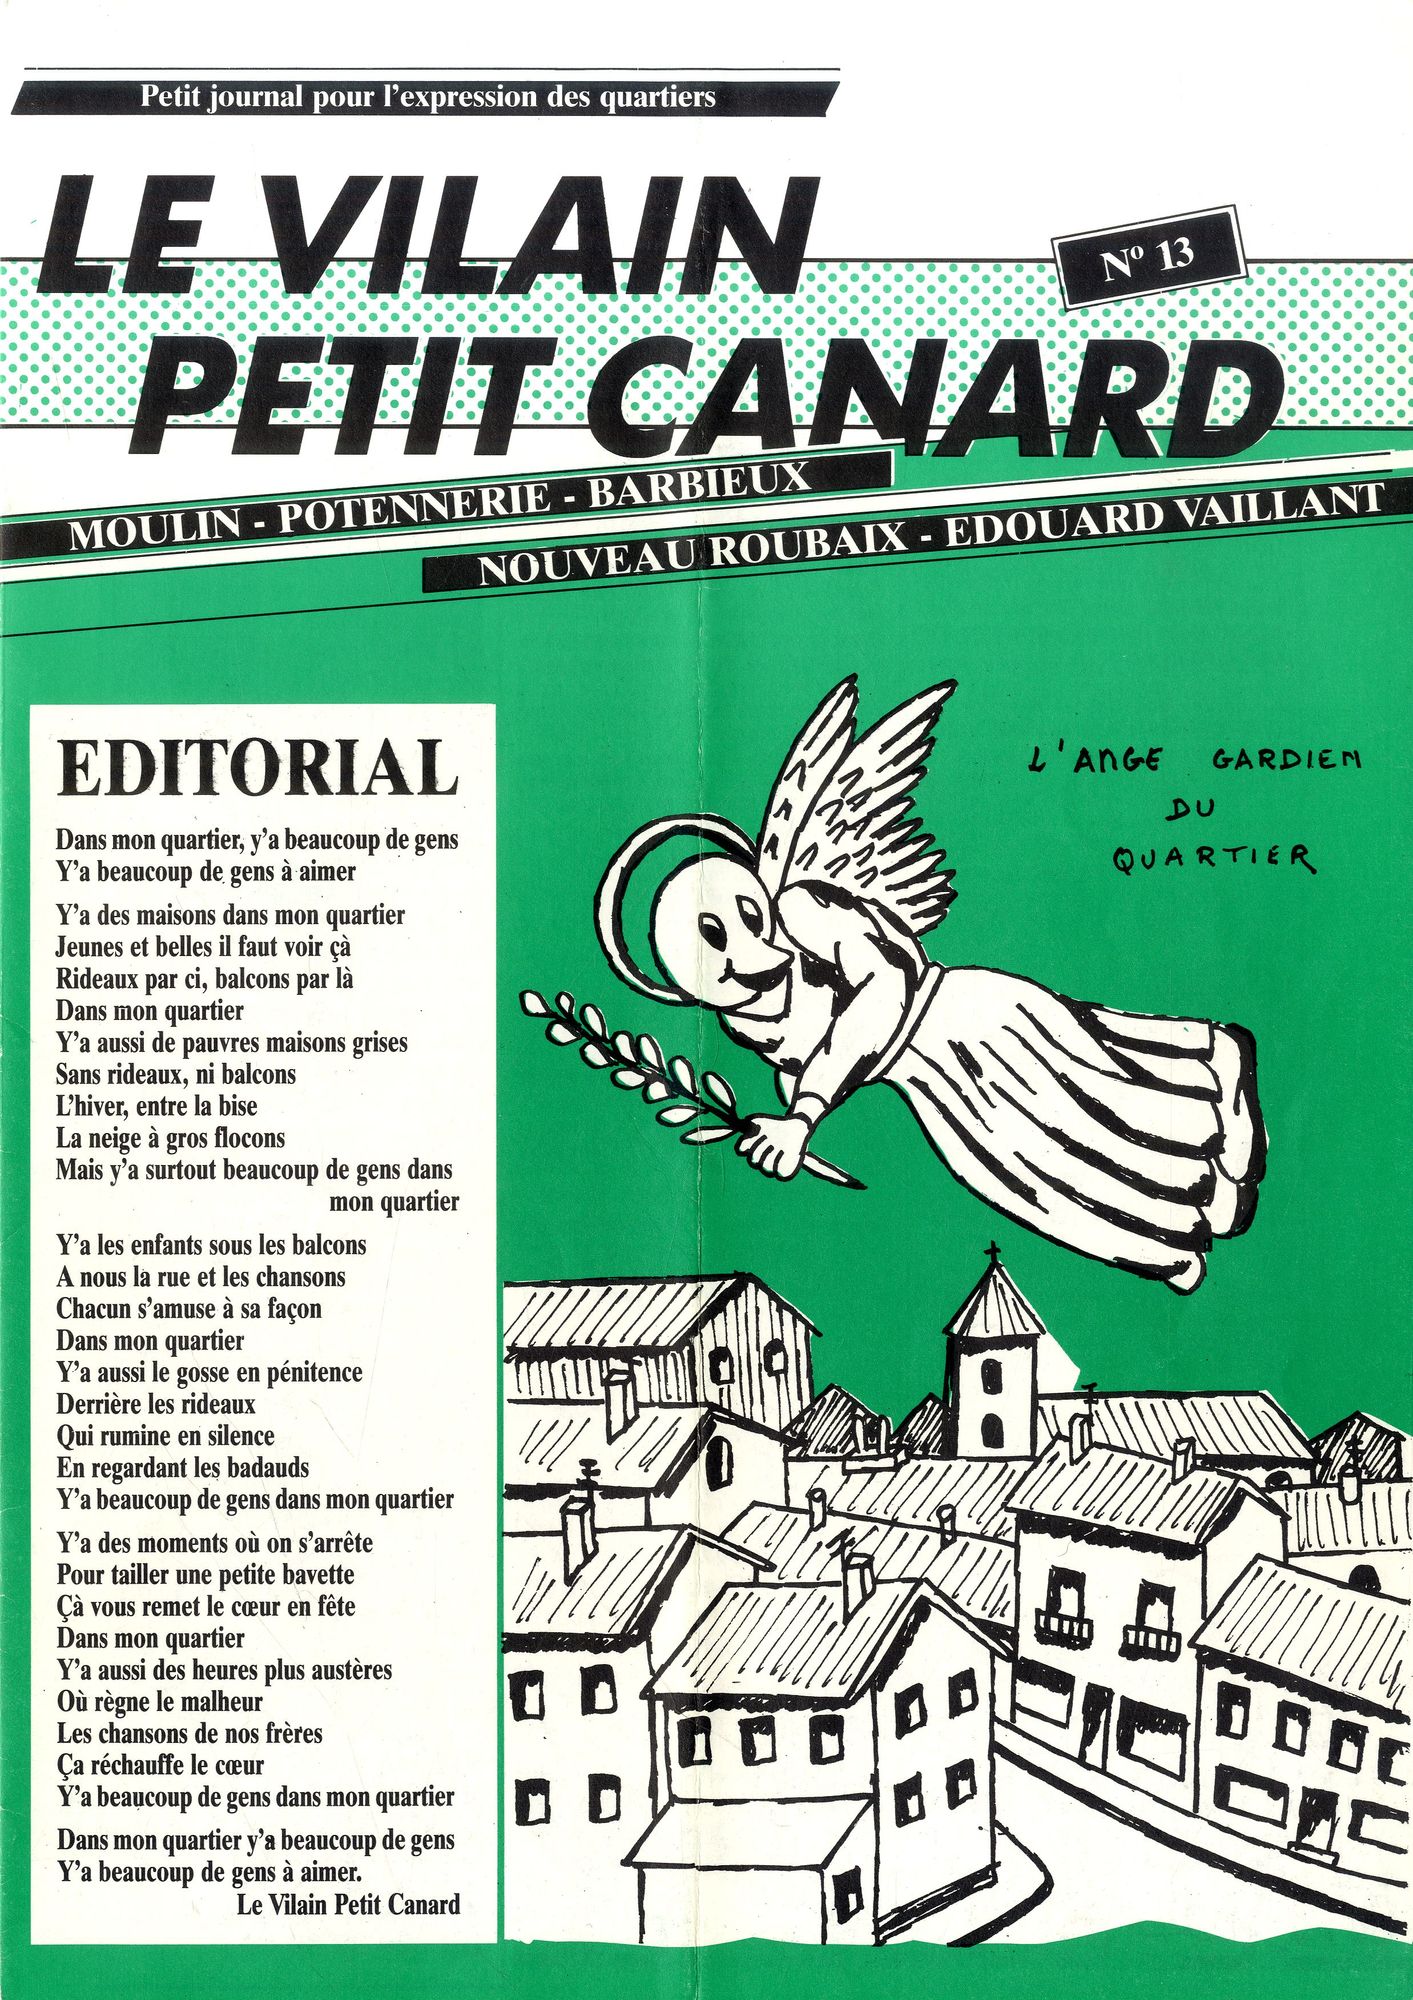 Vilain petit canard n°13